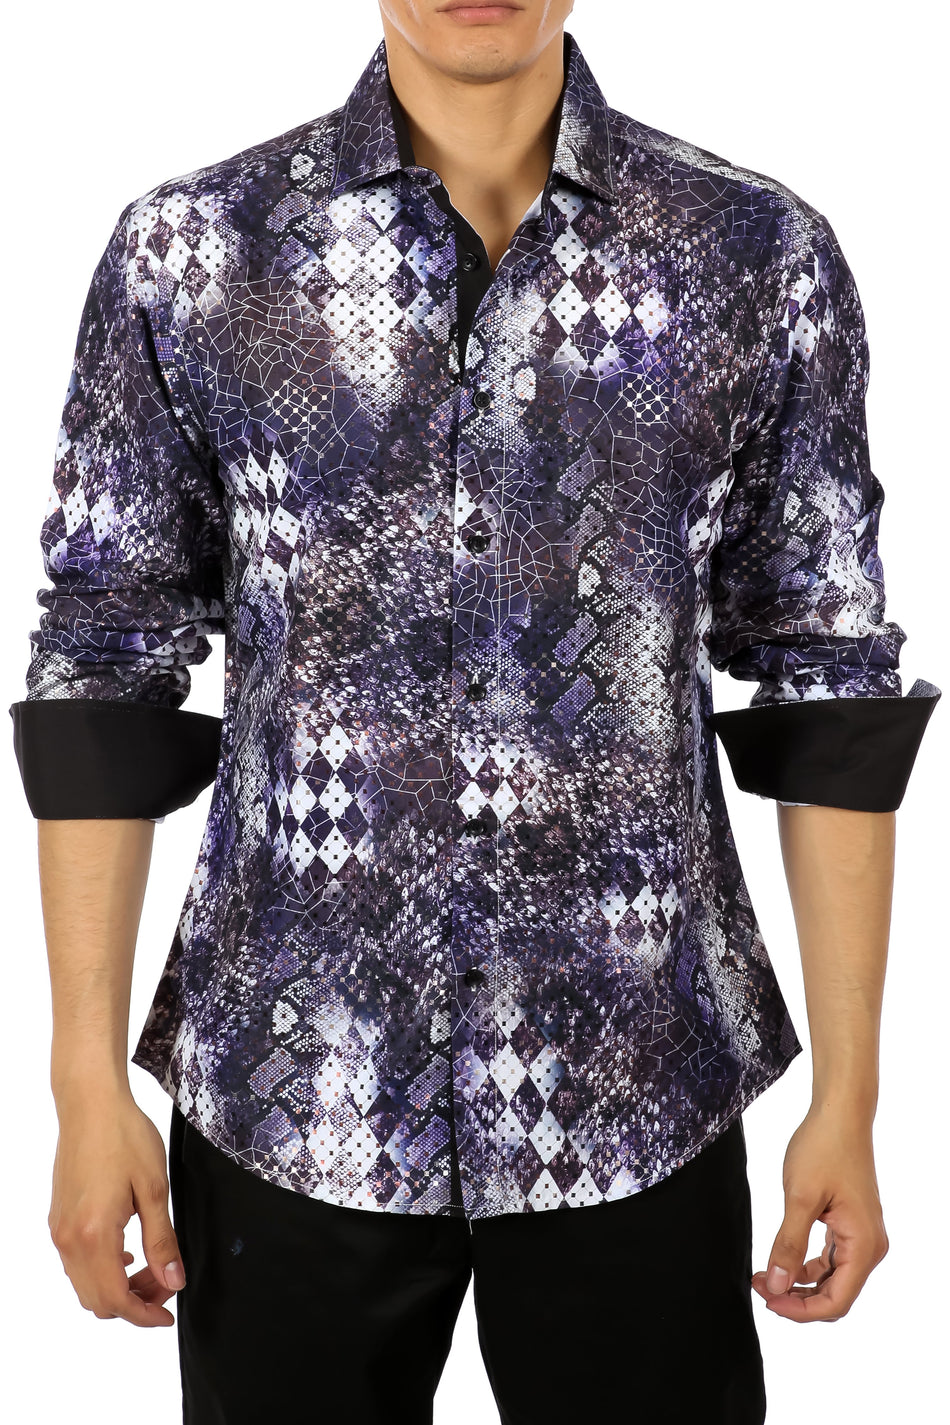 Snakeskin Print Metallic Accent Purple Button Up Long Sleeve Dress Shirt